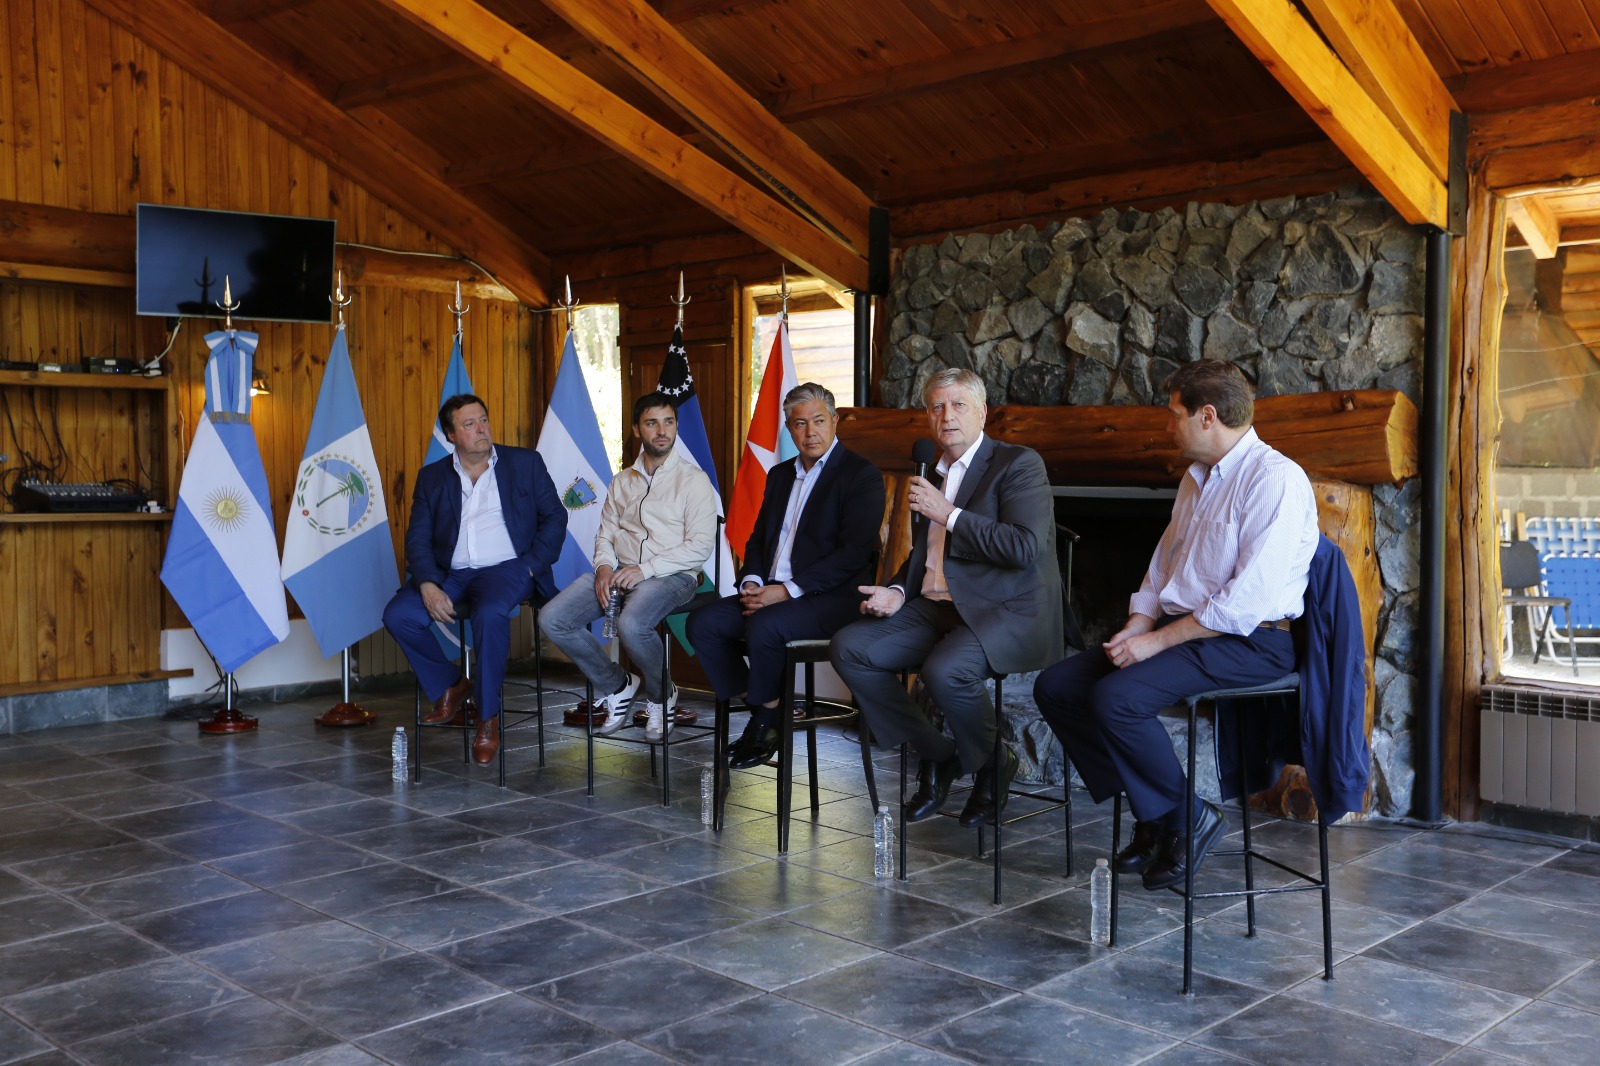 La Patagonia se planta ante Milei: “No puede haber un país rico con provincias pobres”, dice Ziliotto